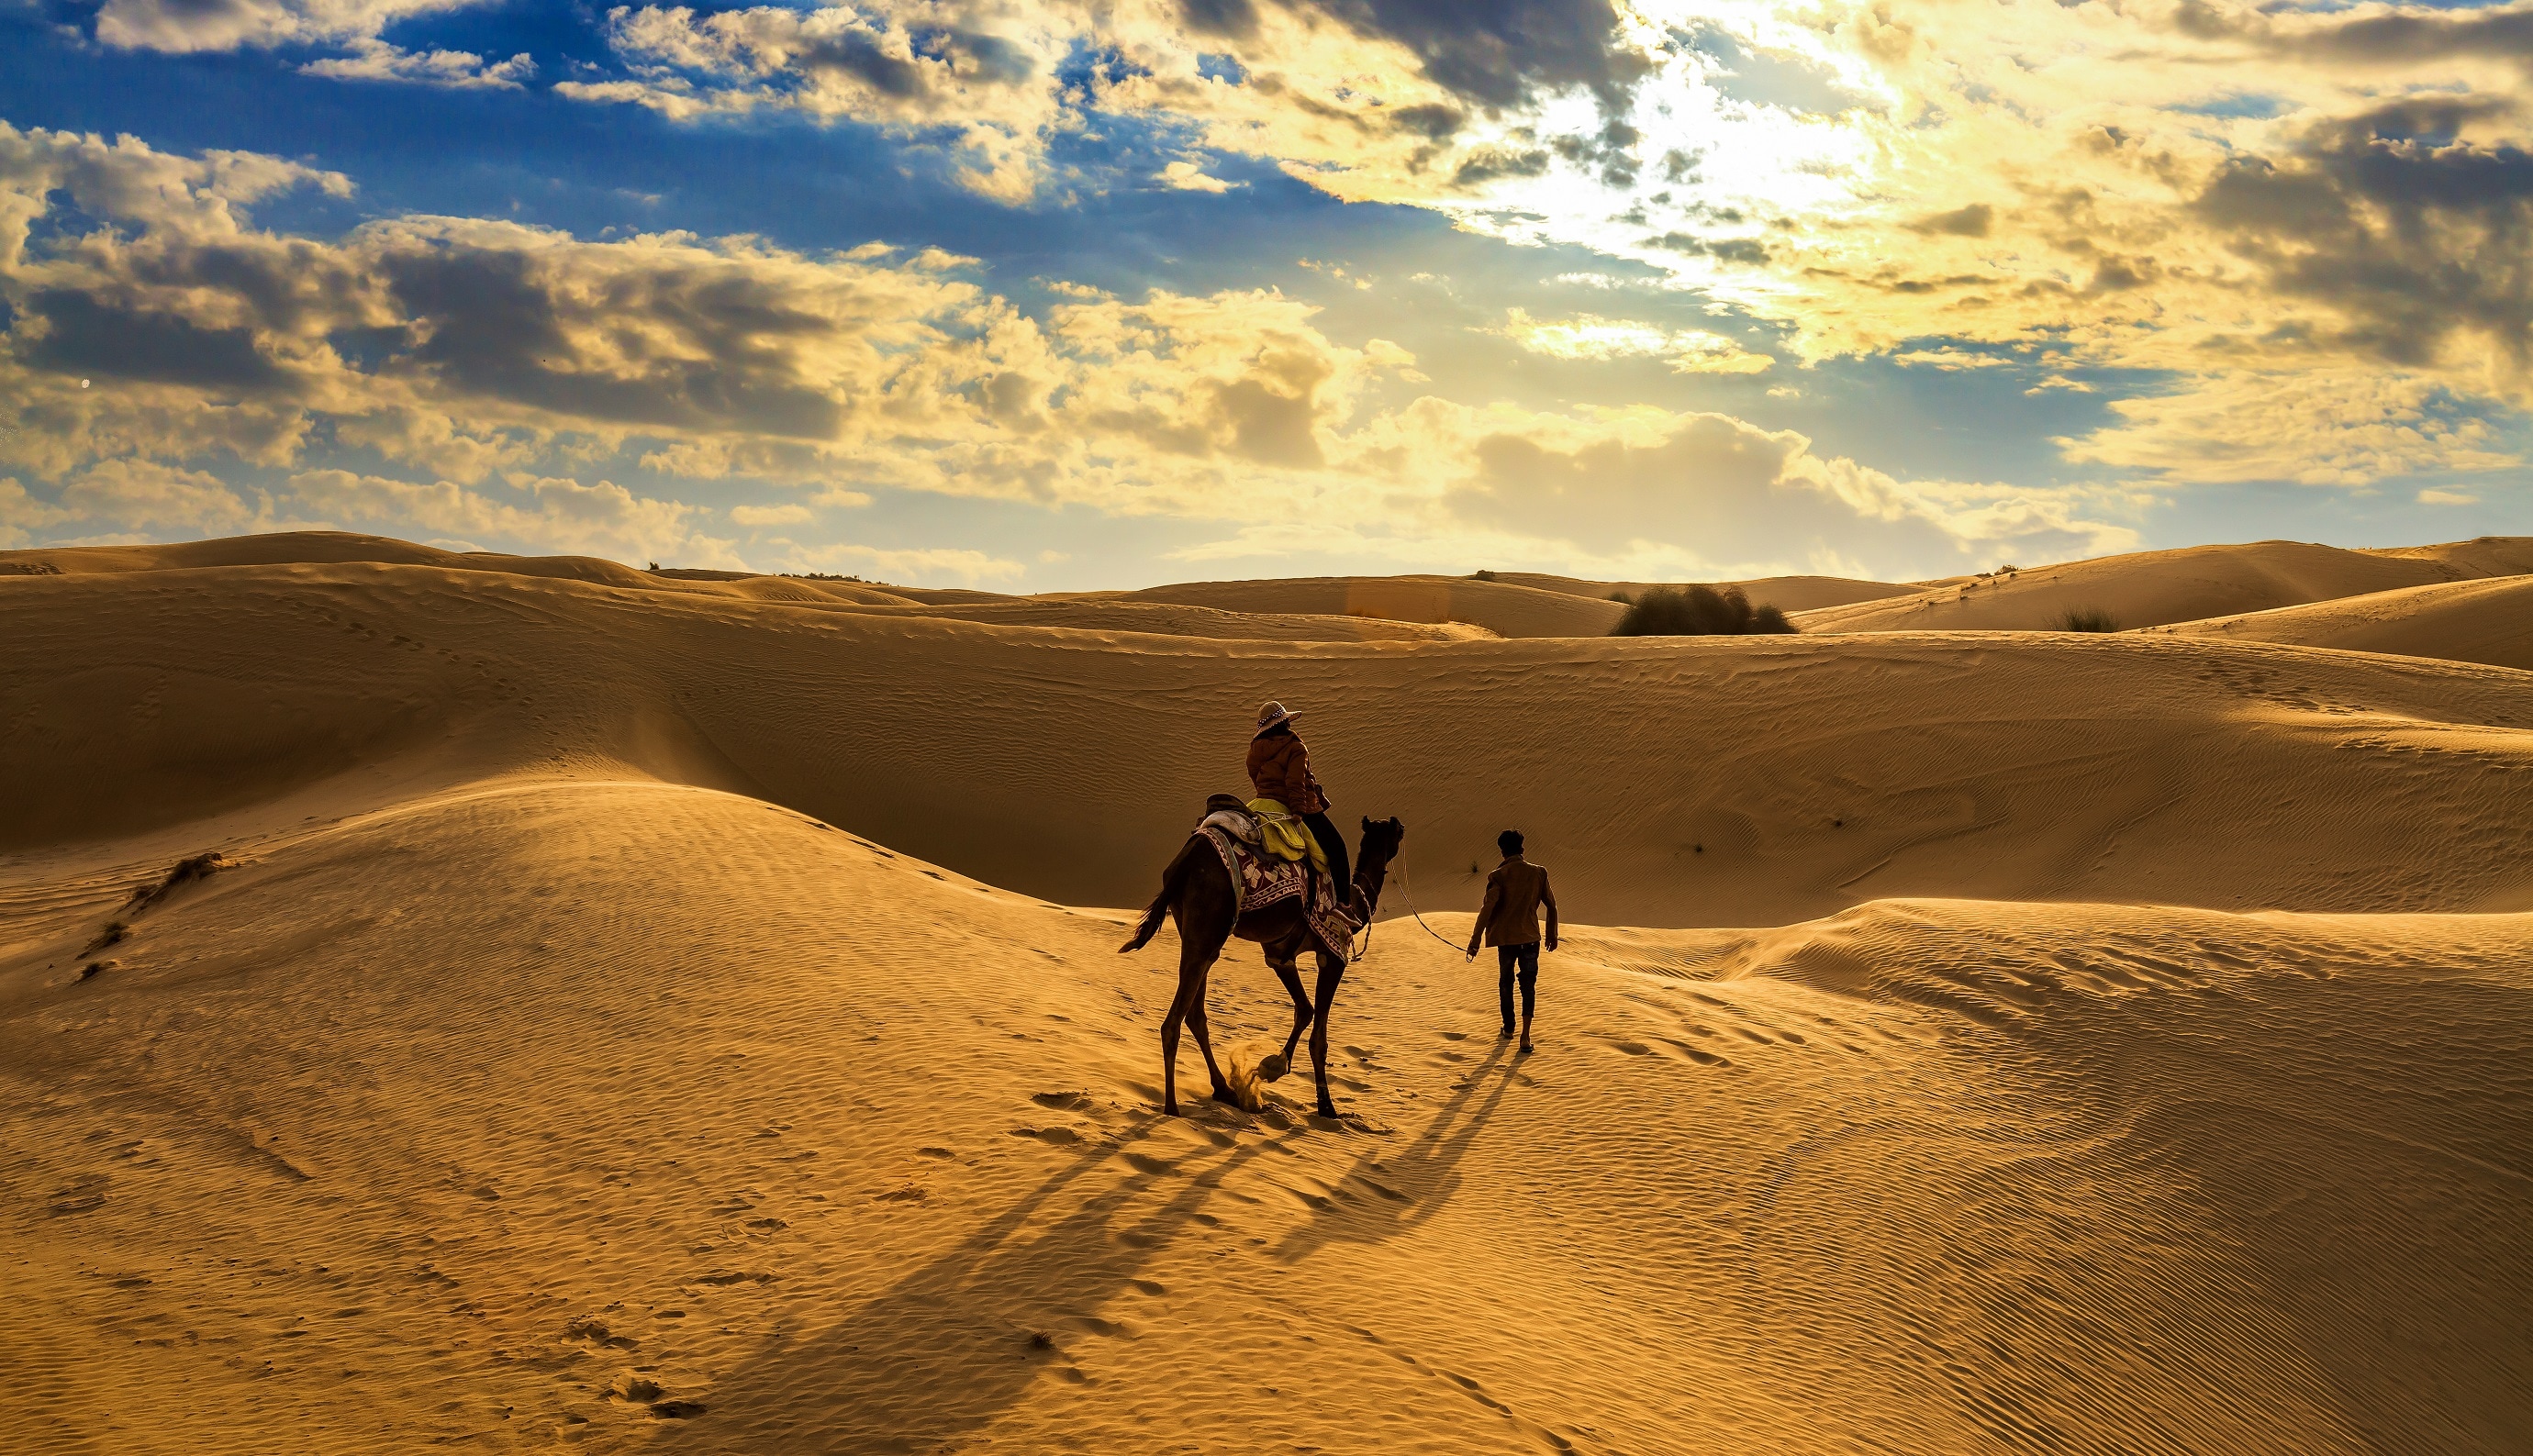 rajasthan desert tourism